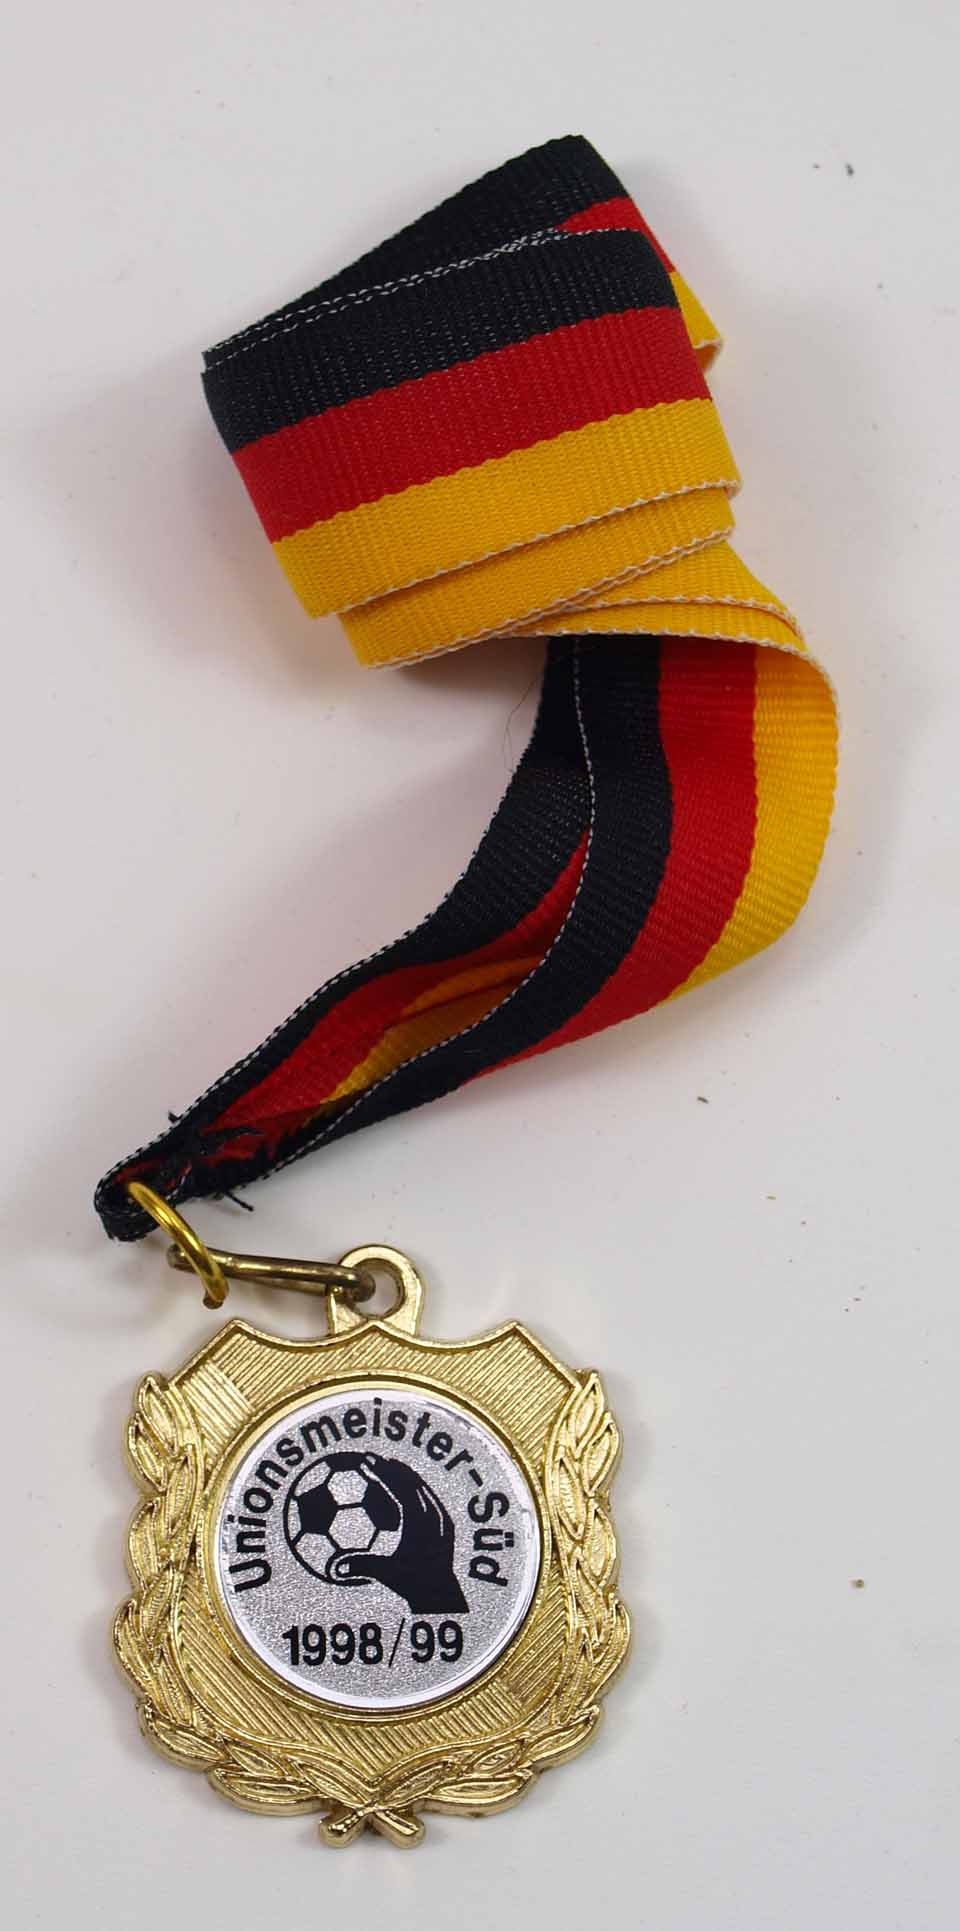 Goldmedaille Unionsmeisterschaften Süd 1998/99 (Museum Weißenfels - Schloss Neu-Augustusburg CC BY-NC-SA)